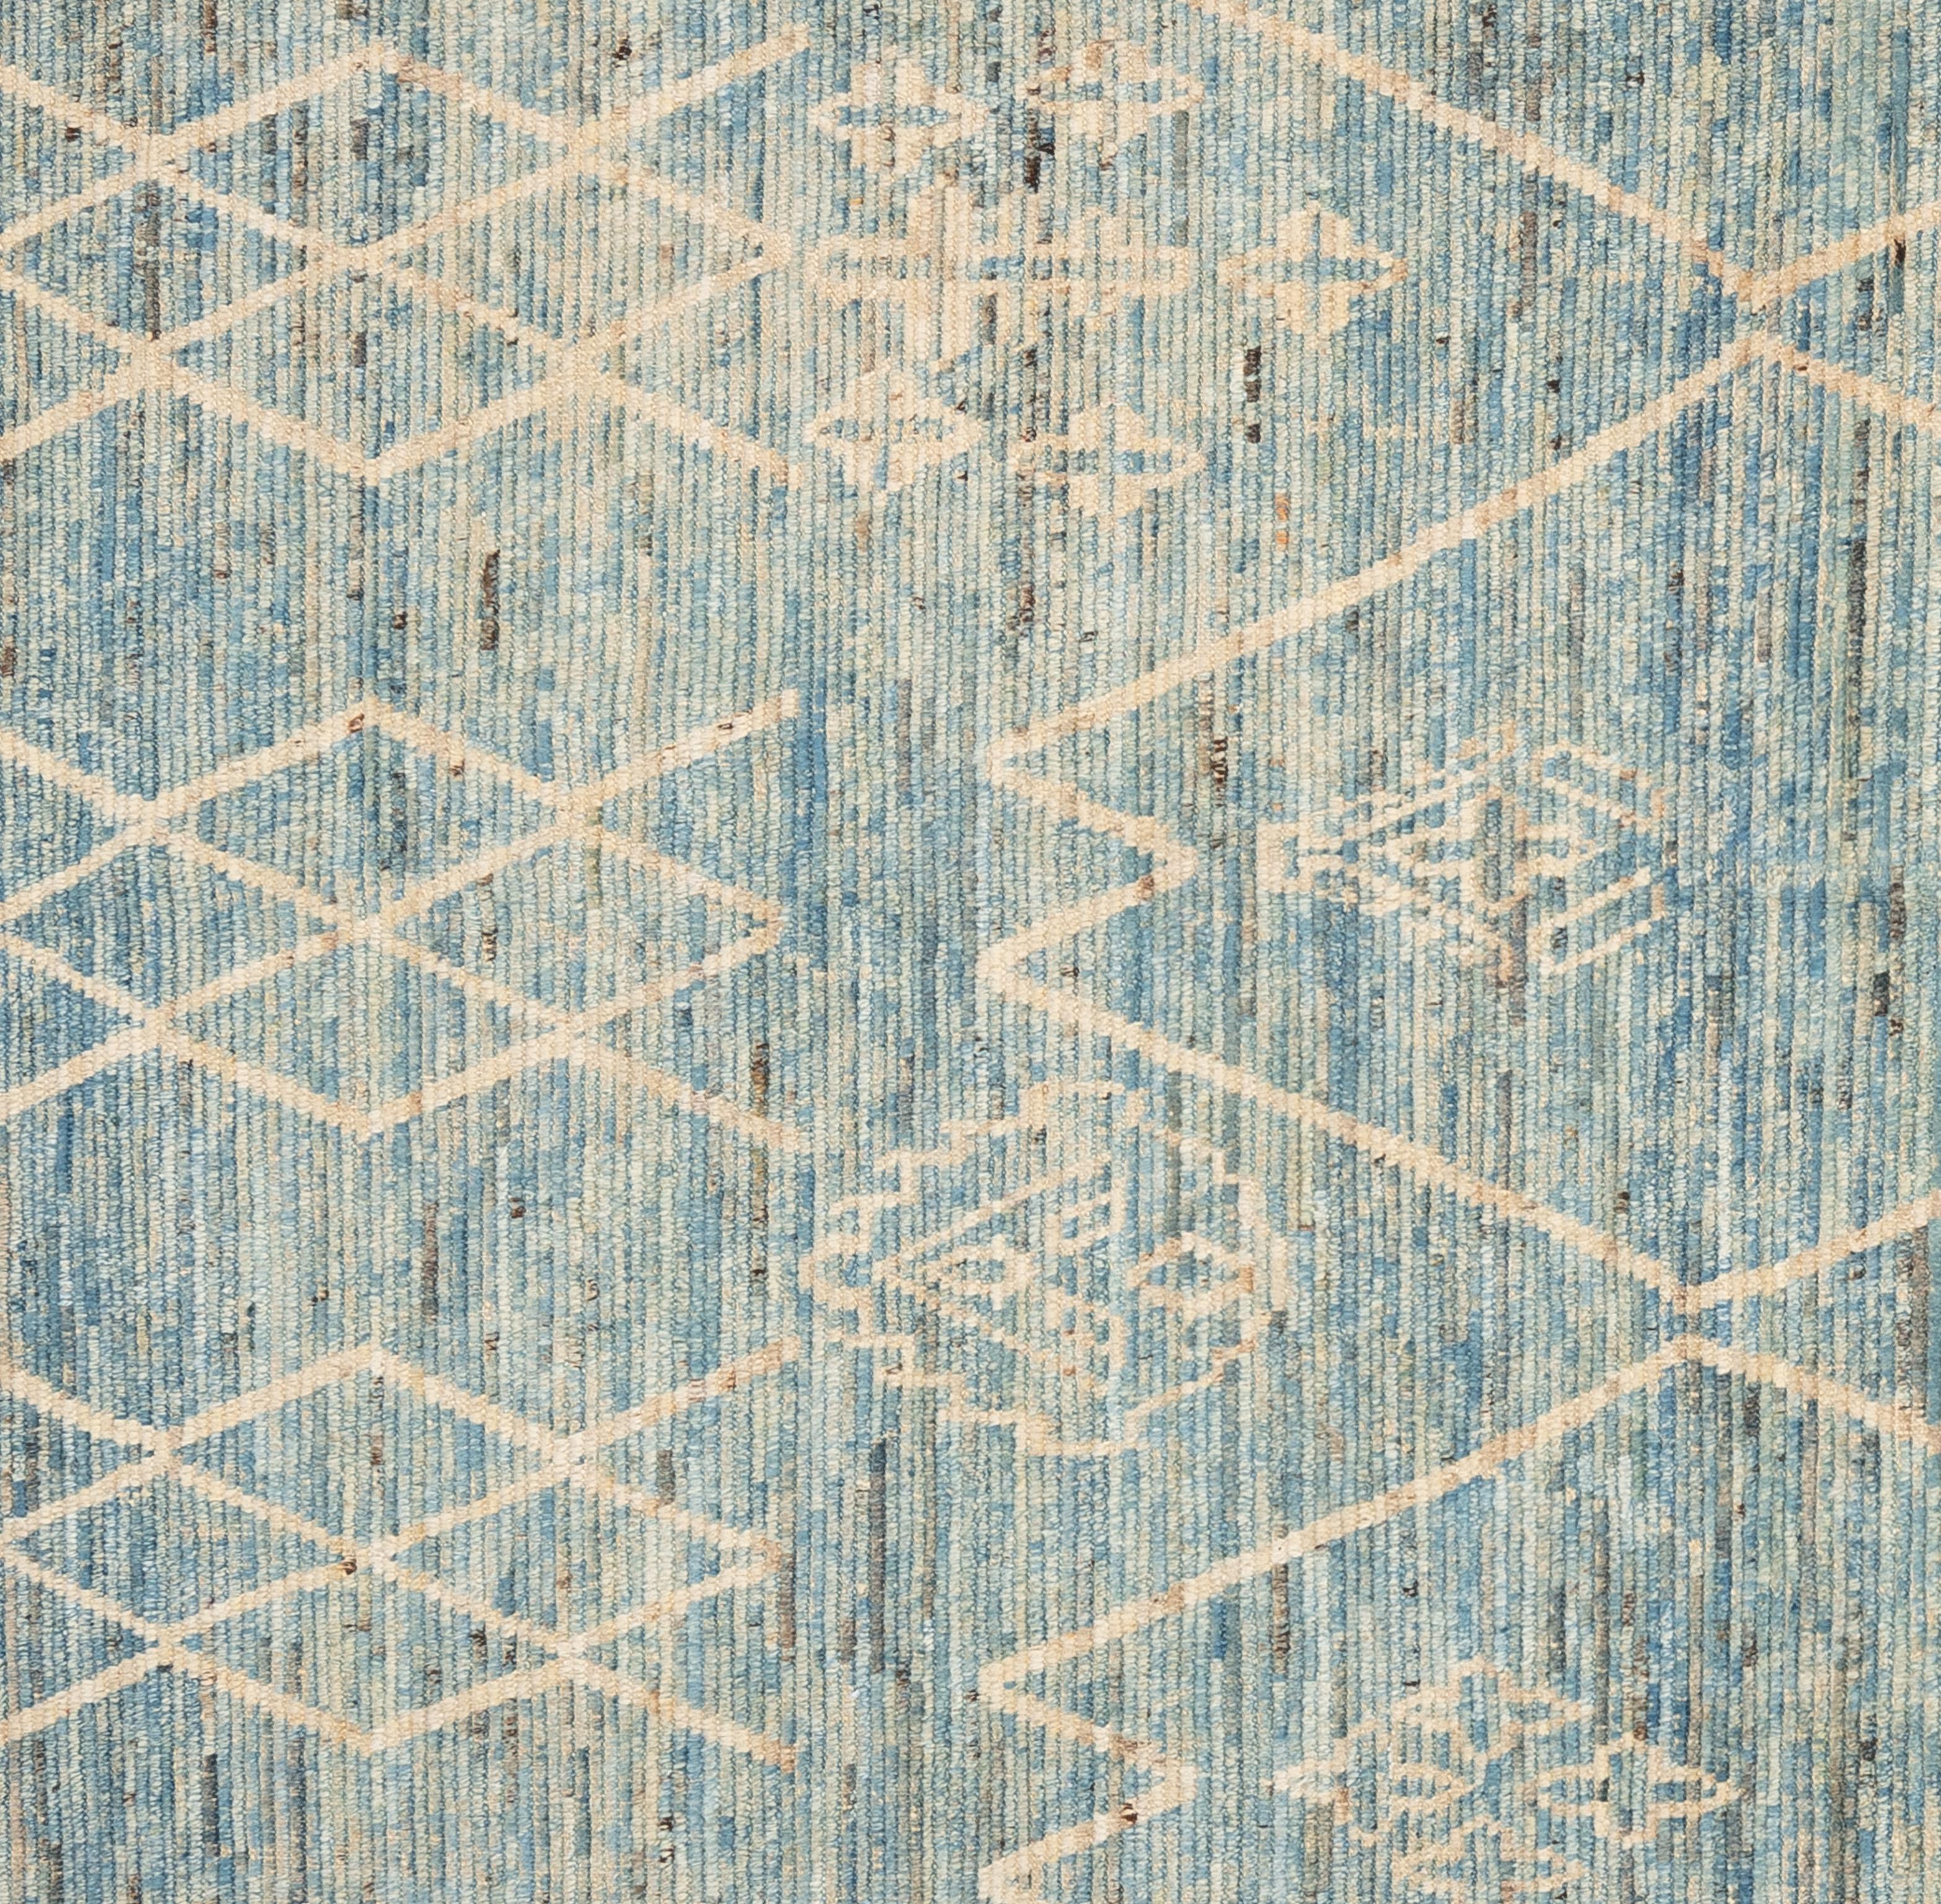 Tissé à la main avec 100 % de laine filée à la main, dans les forêts subtropicales du Pakistan, ce magnifique tapis marocain teint naturellement est vraiment unique en son genre. Les tapis marocains ont tendance à être simples et sont le complément